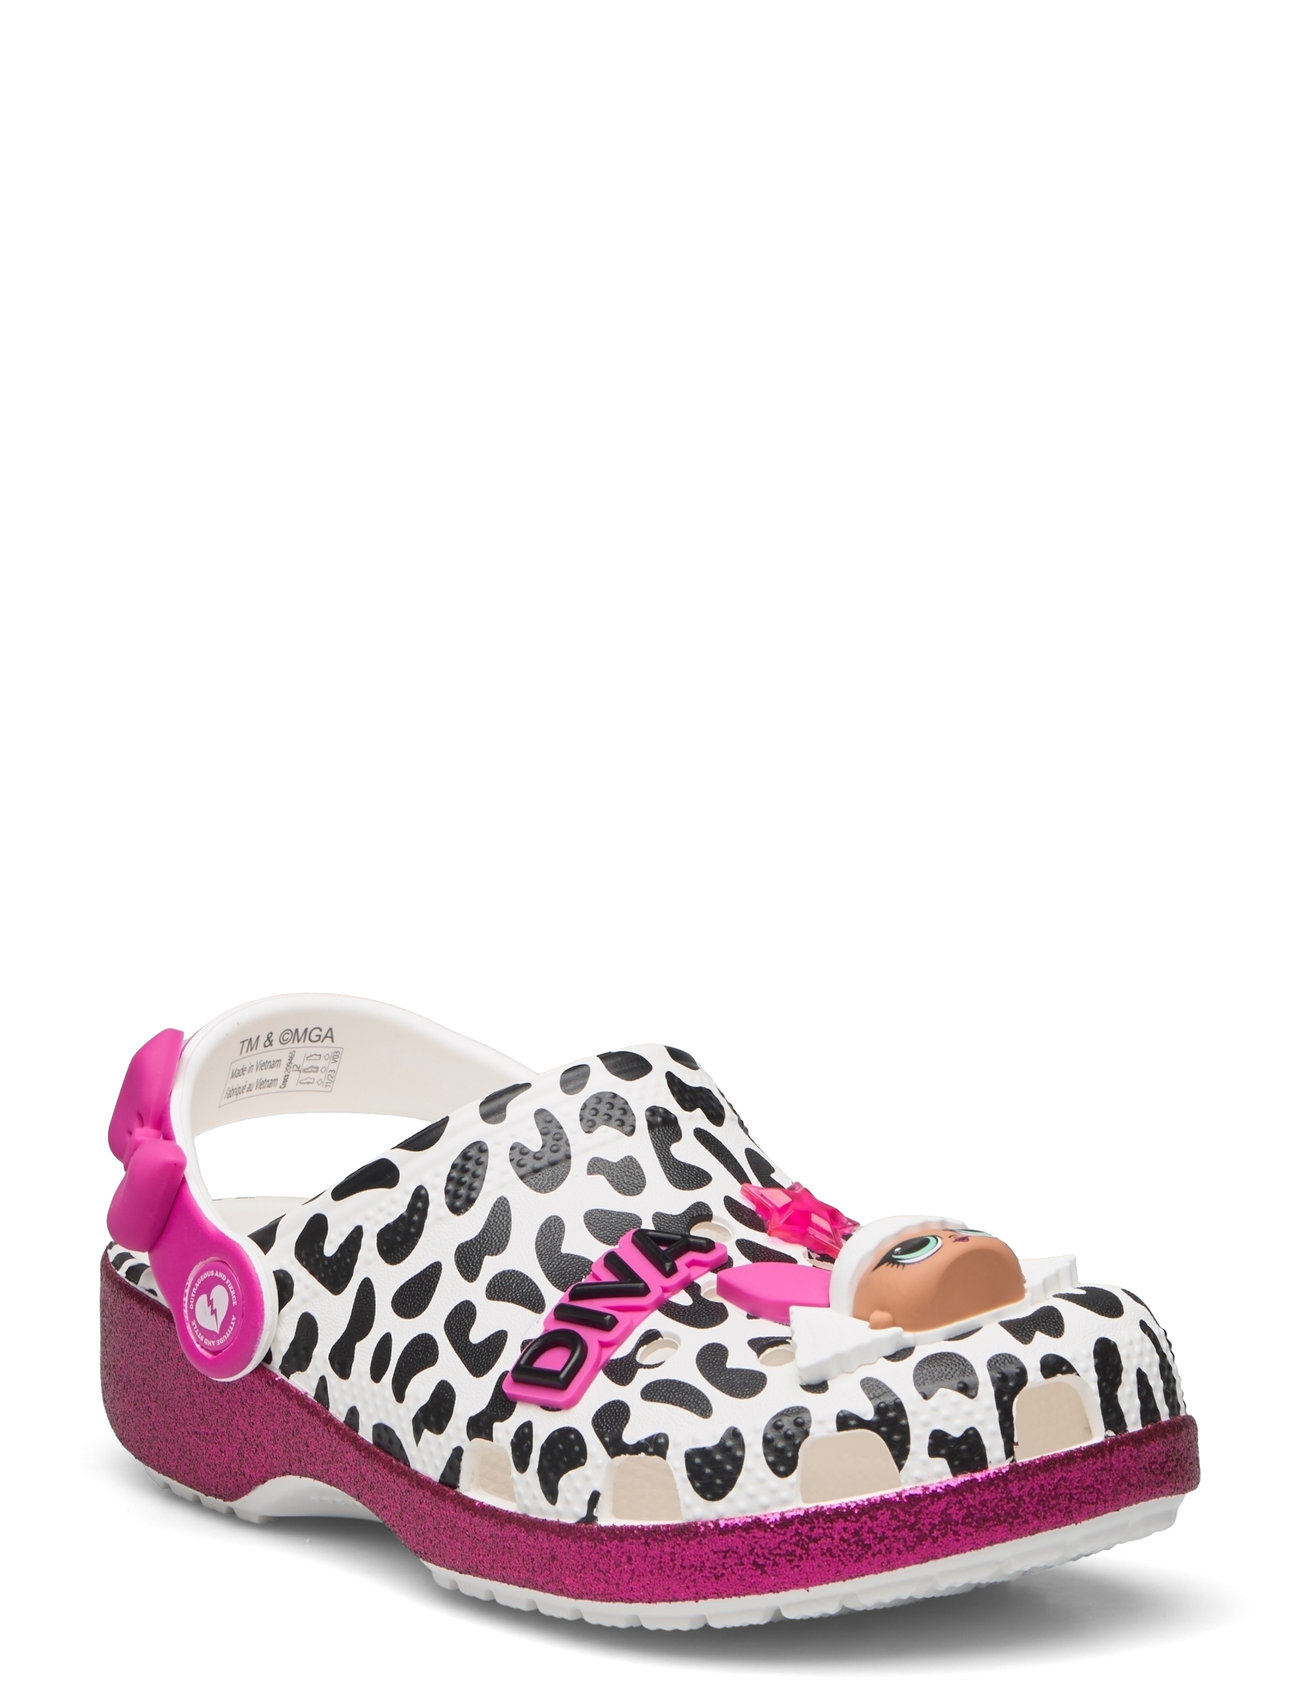 Lol Surprise Diva Cls Clg K Shoes Clogs Multi/patterned Crocs